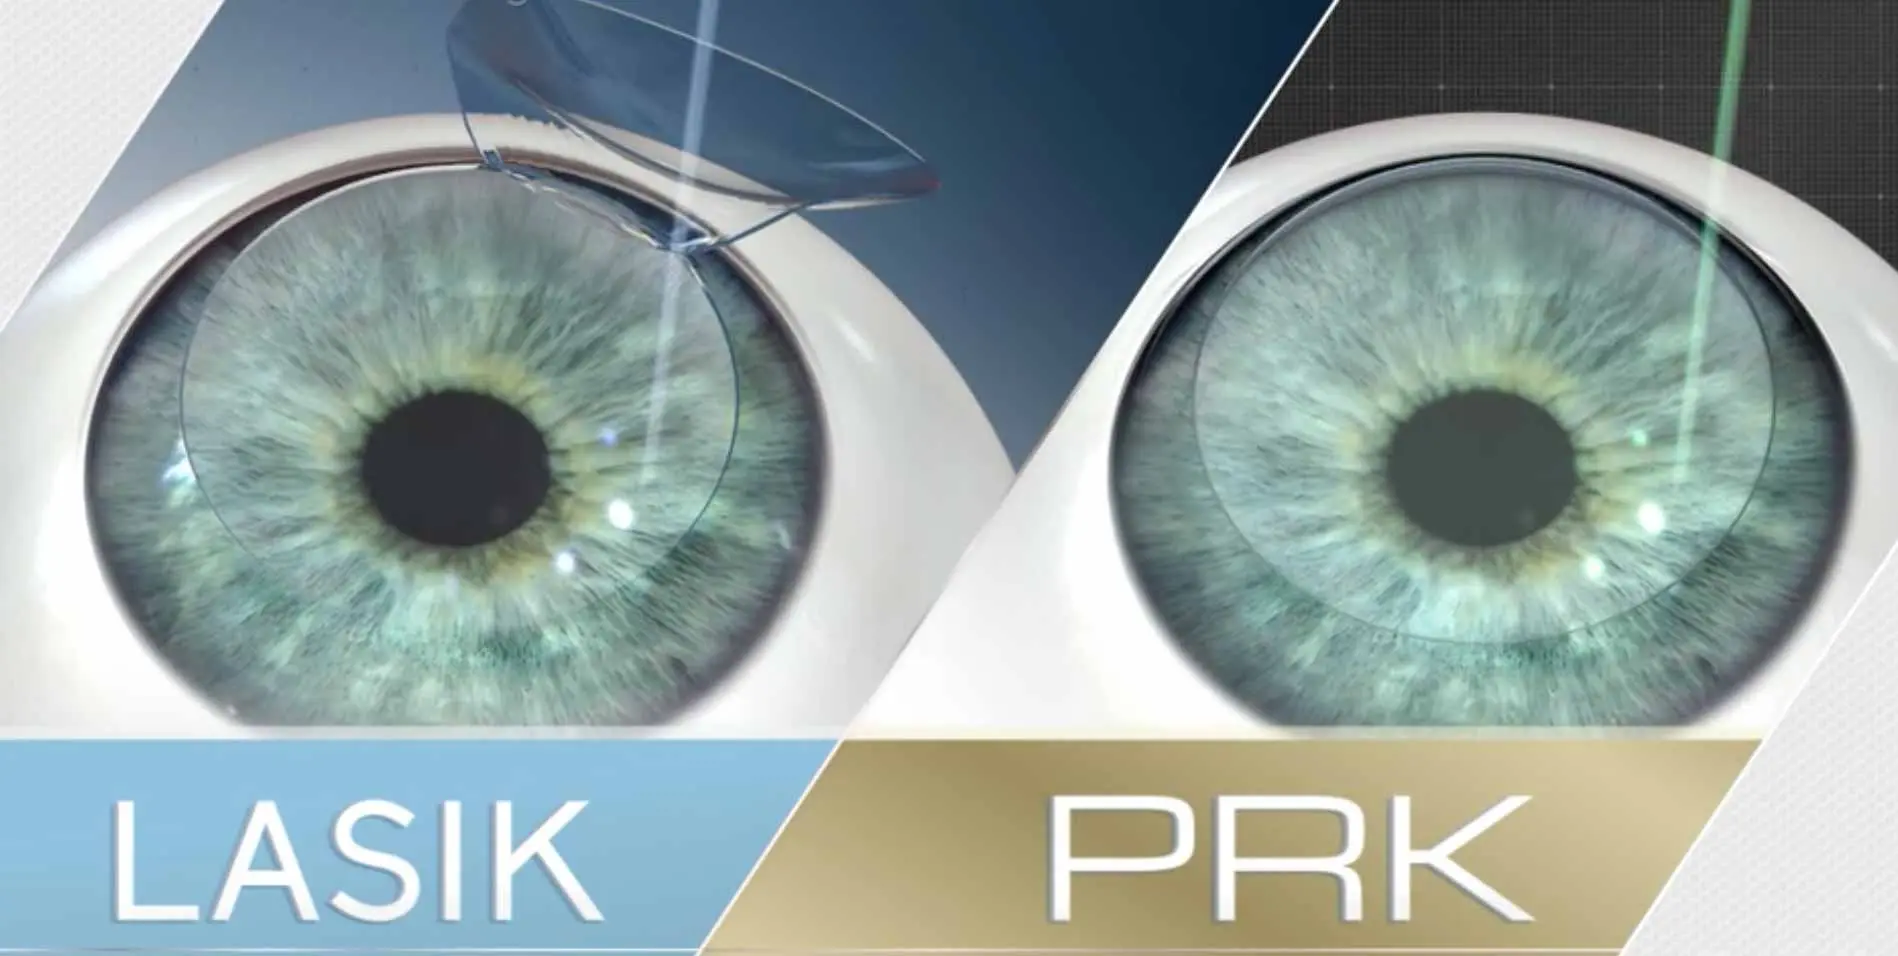 PRK یا لازک؟ کدام بهترند؟ - دکترعینک